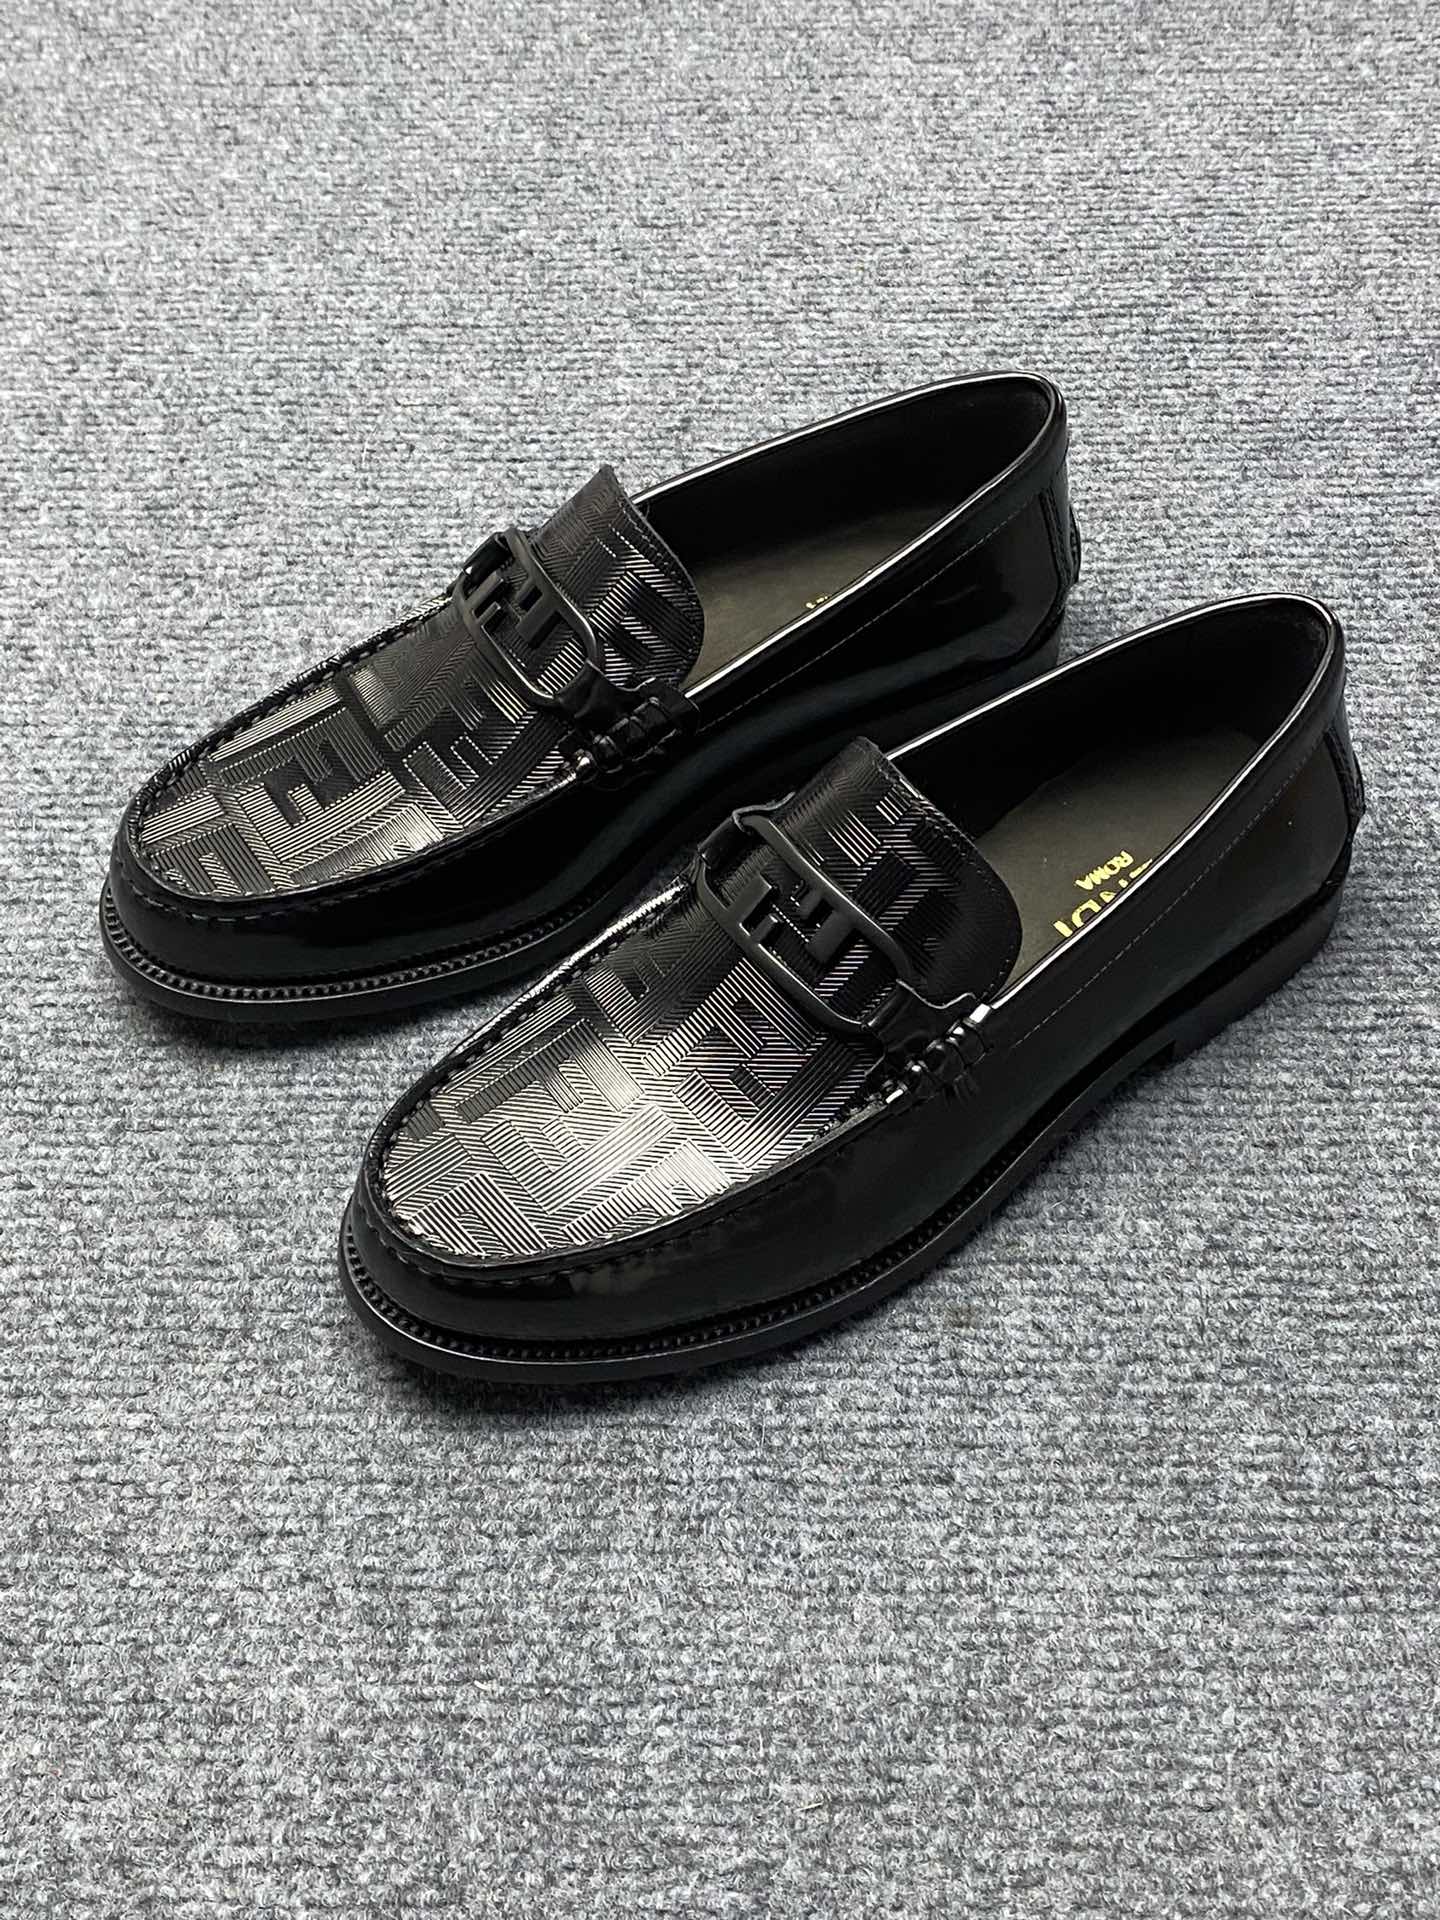 Fendi Shoes Plain Toe Best Wholesale Replica
 Men Cowhide Genuine Leather